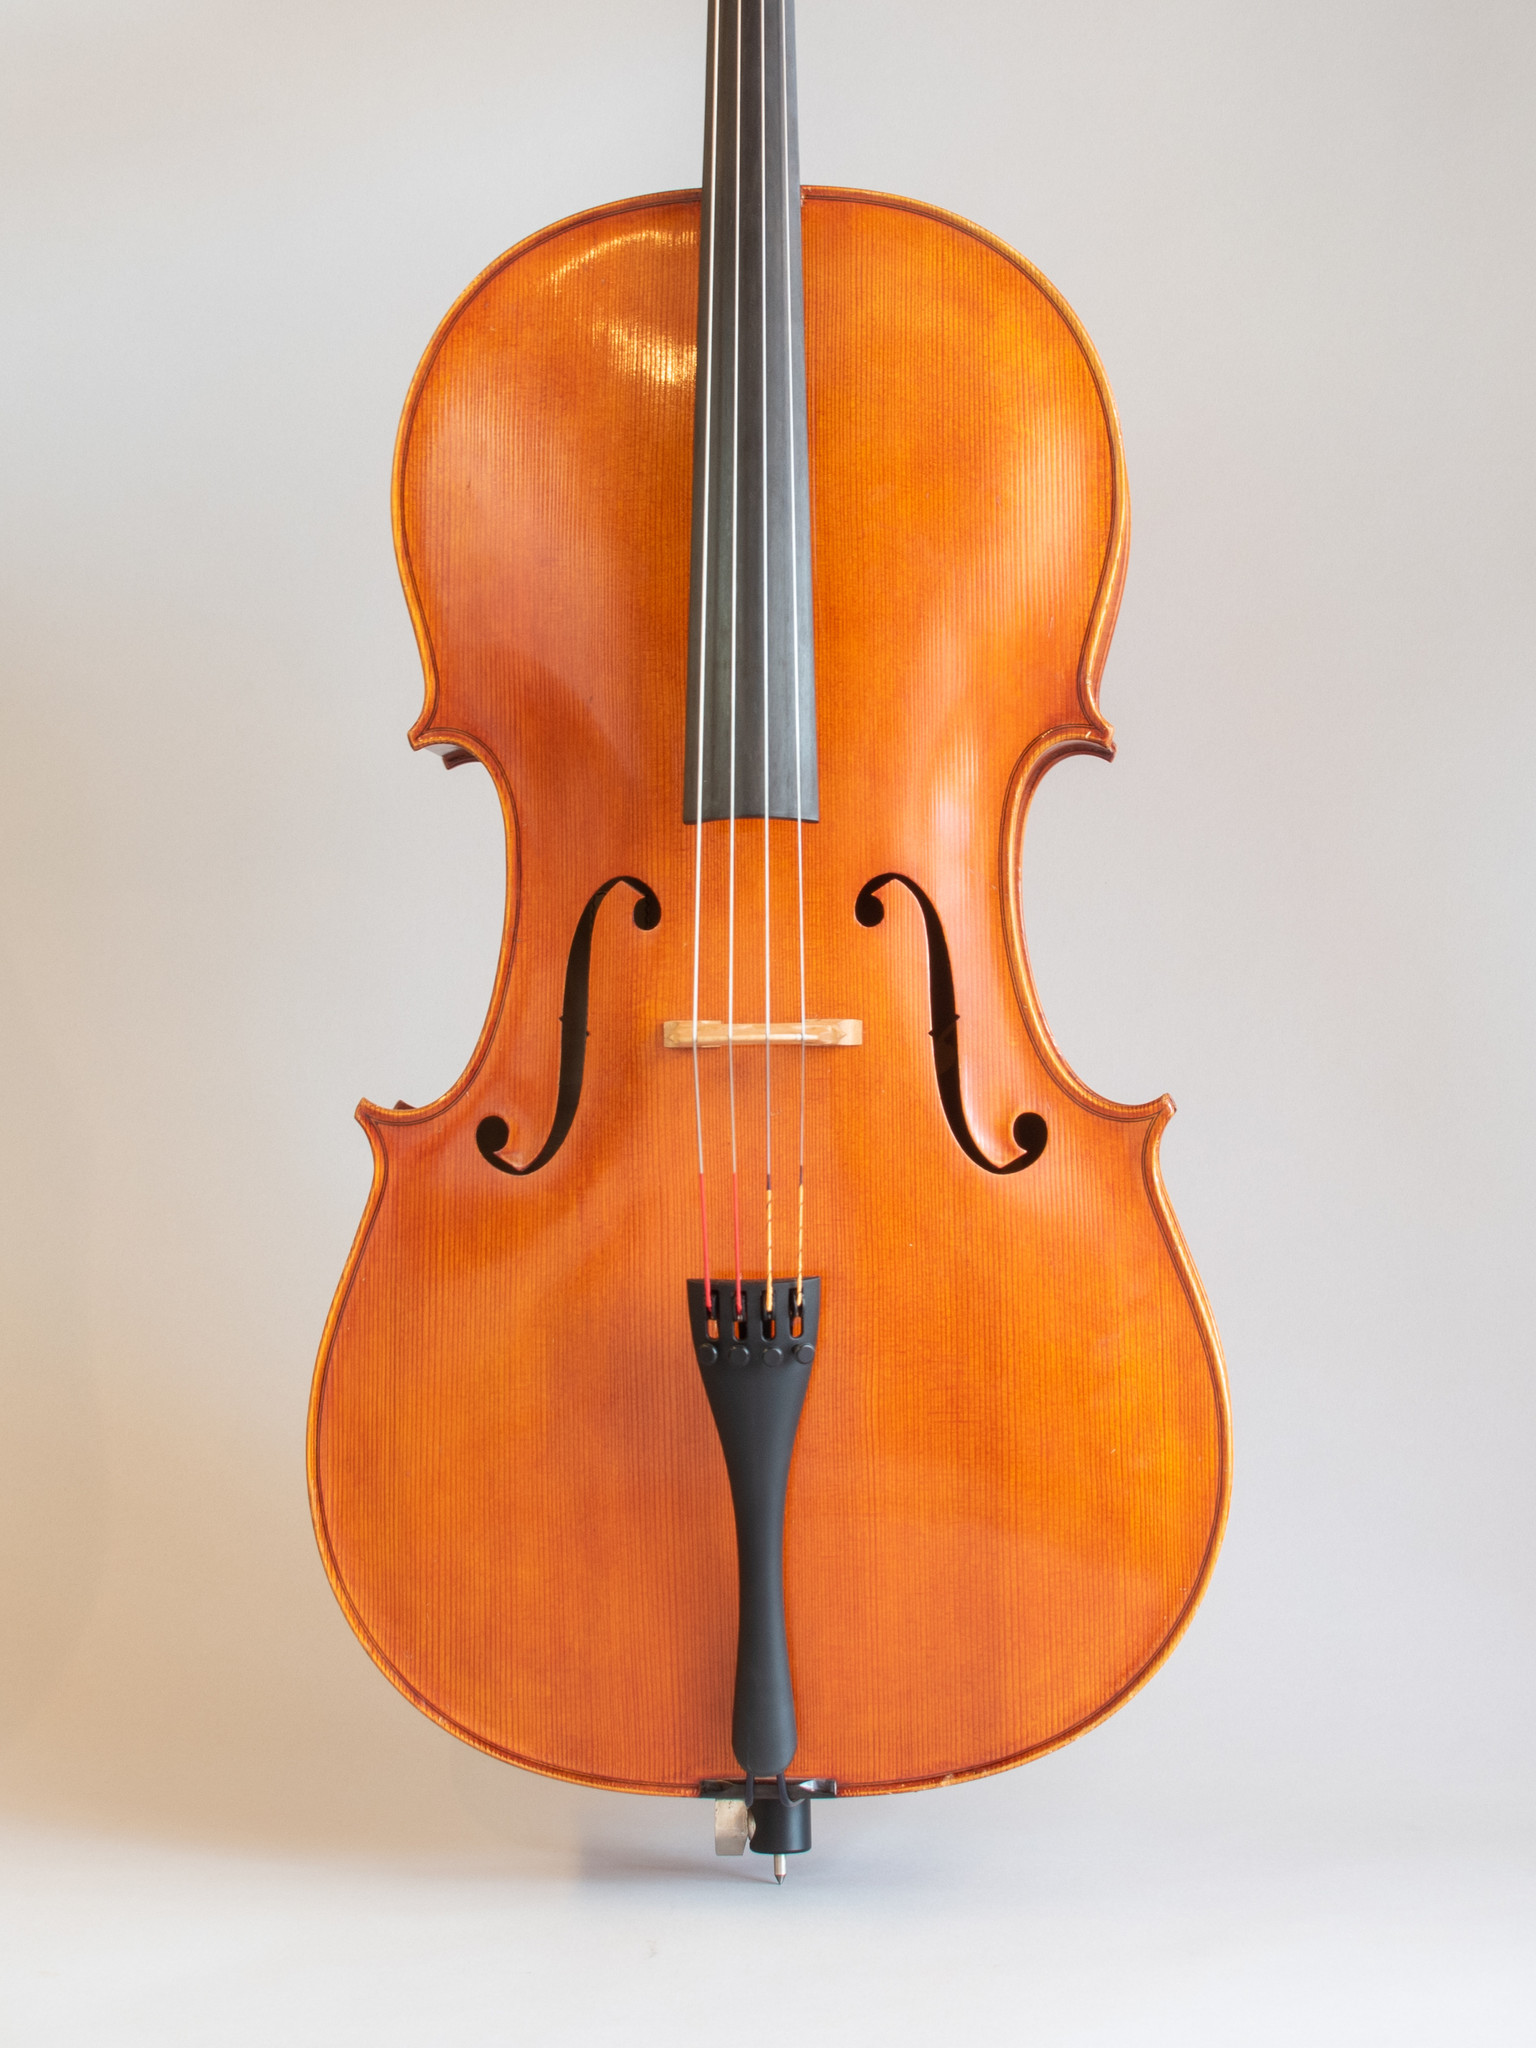 Rudolf Schuster cello, 1986, Mittenwald, GERMANY